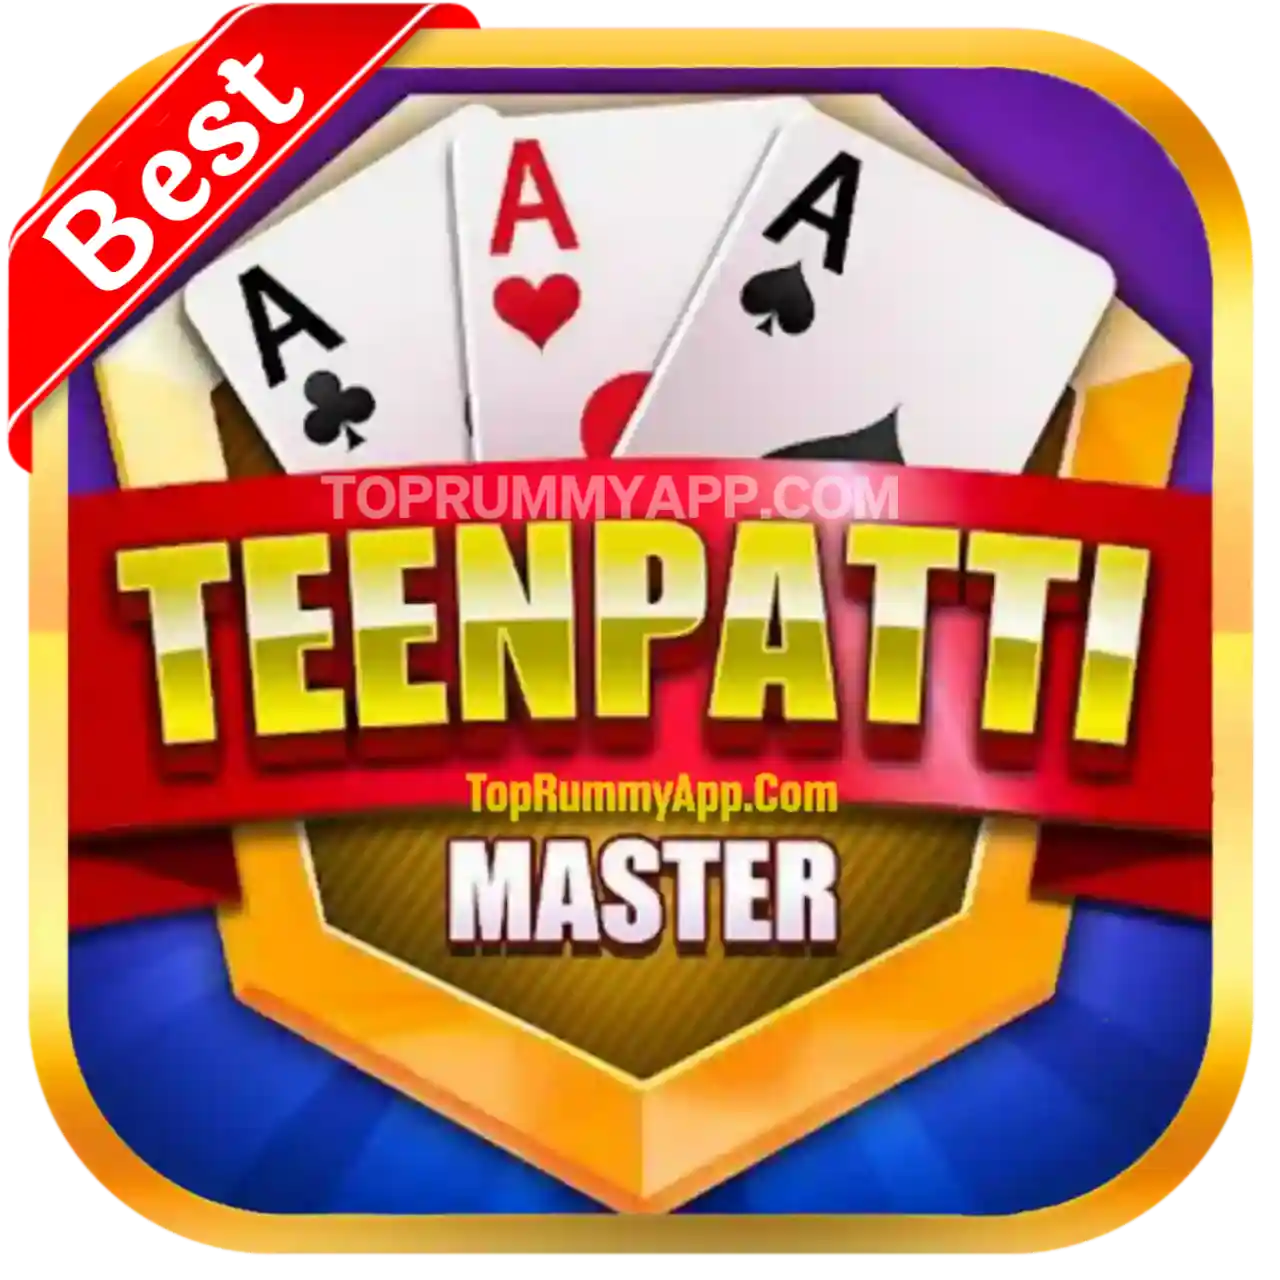 Teen Patti Master Apk Download - Top 5 Teen Patti App List